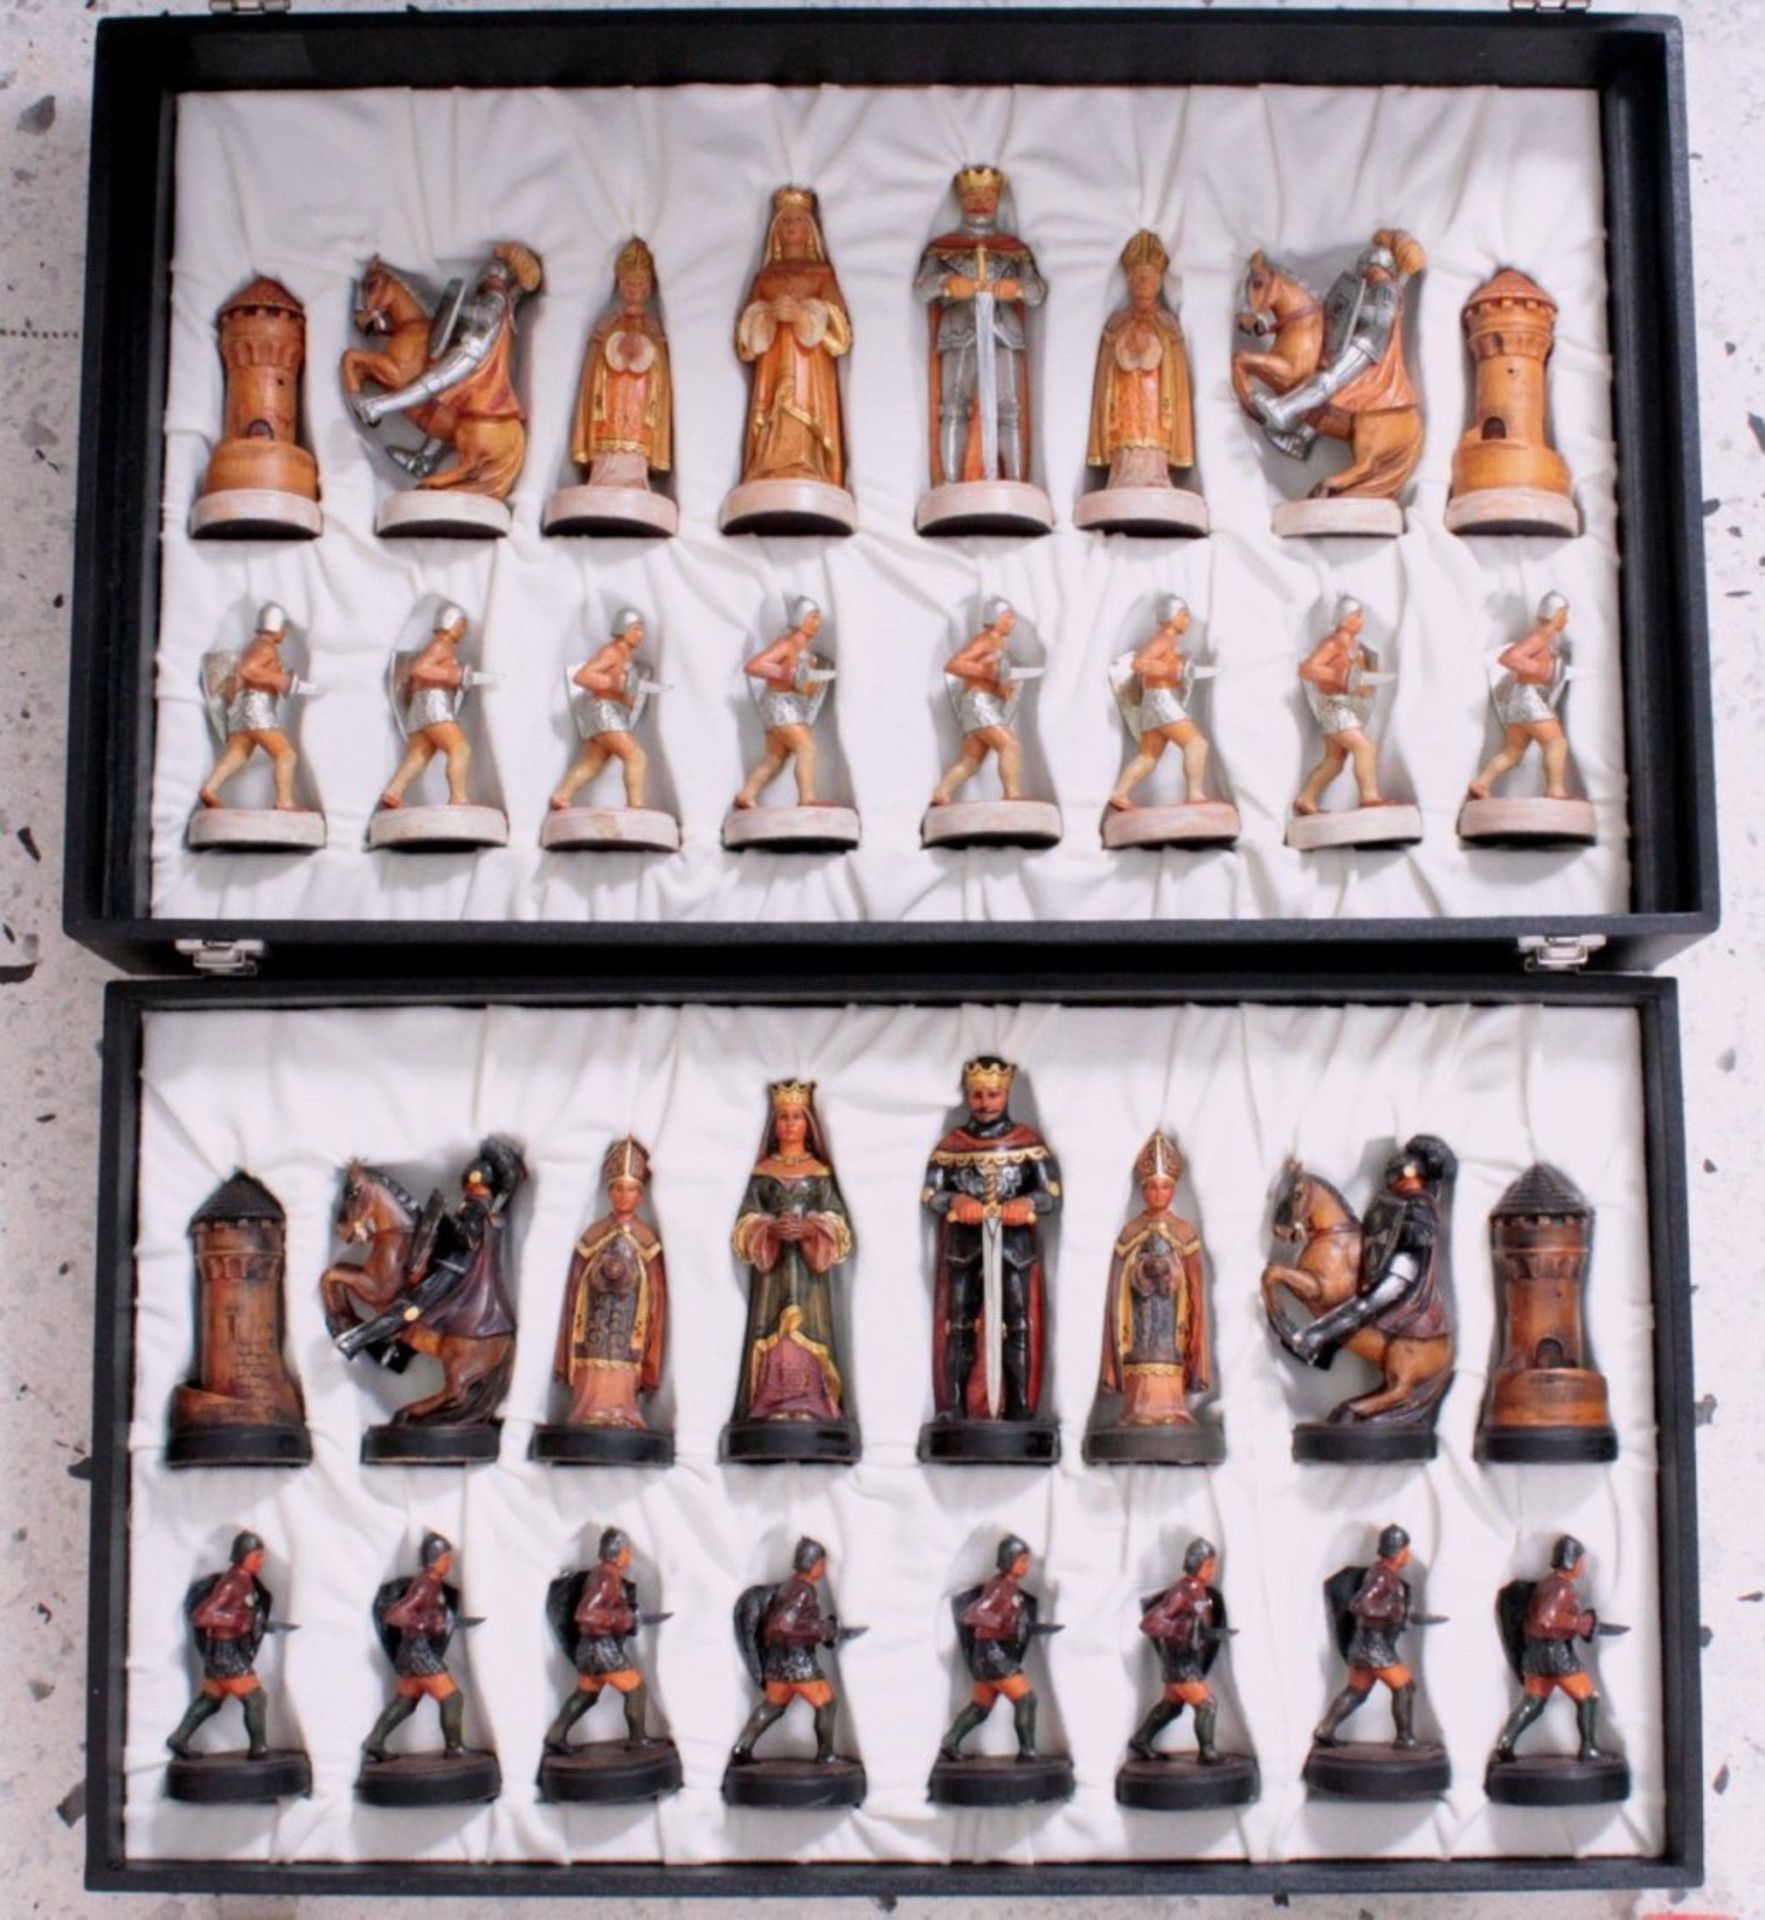 Montsalvat Schachserie Anri32 Figuren nach Motiven der König-Artus-Sage, Handarbeit,polychrom - Image 2 of 3